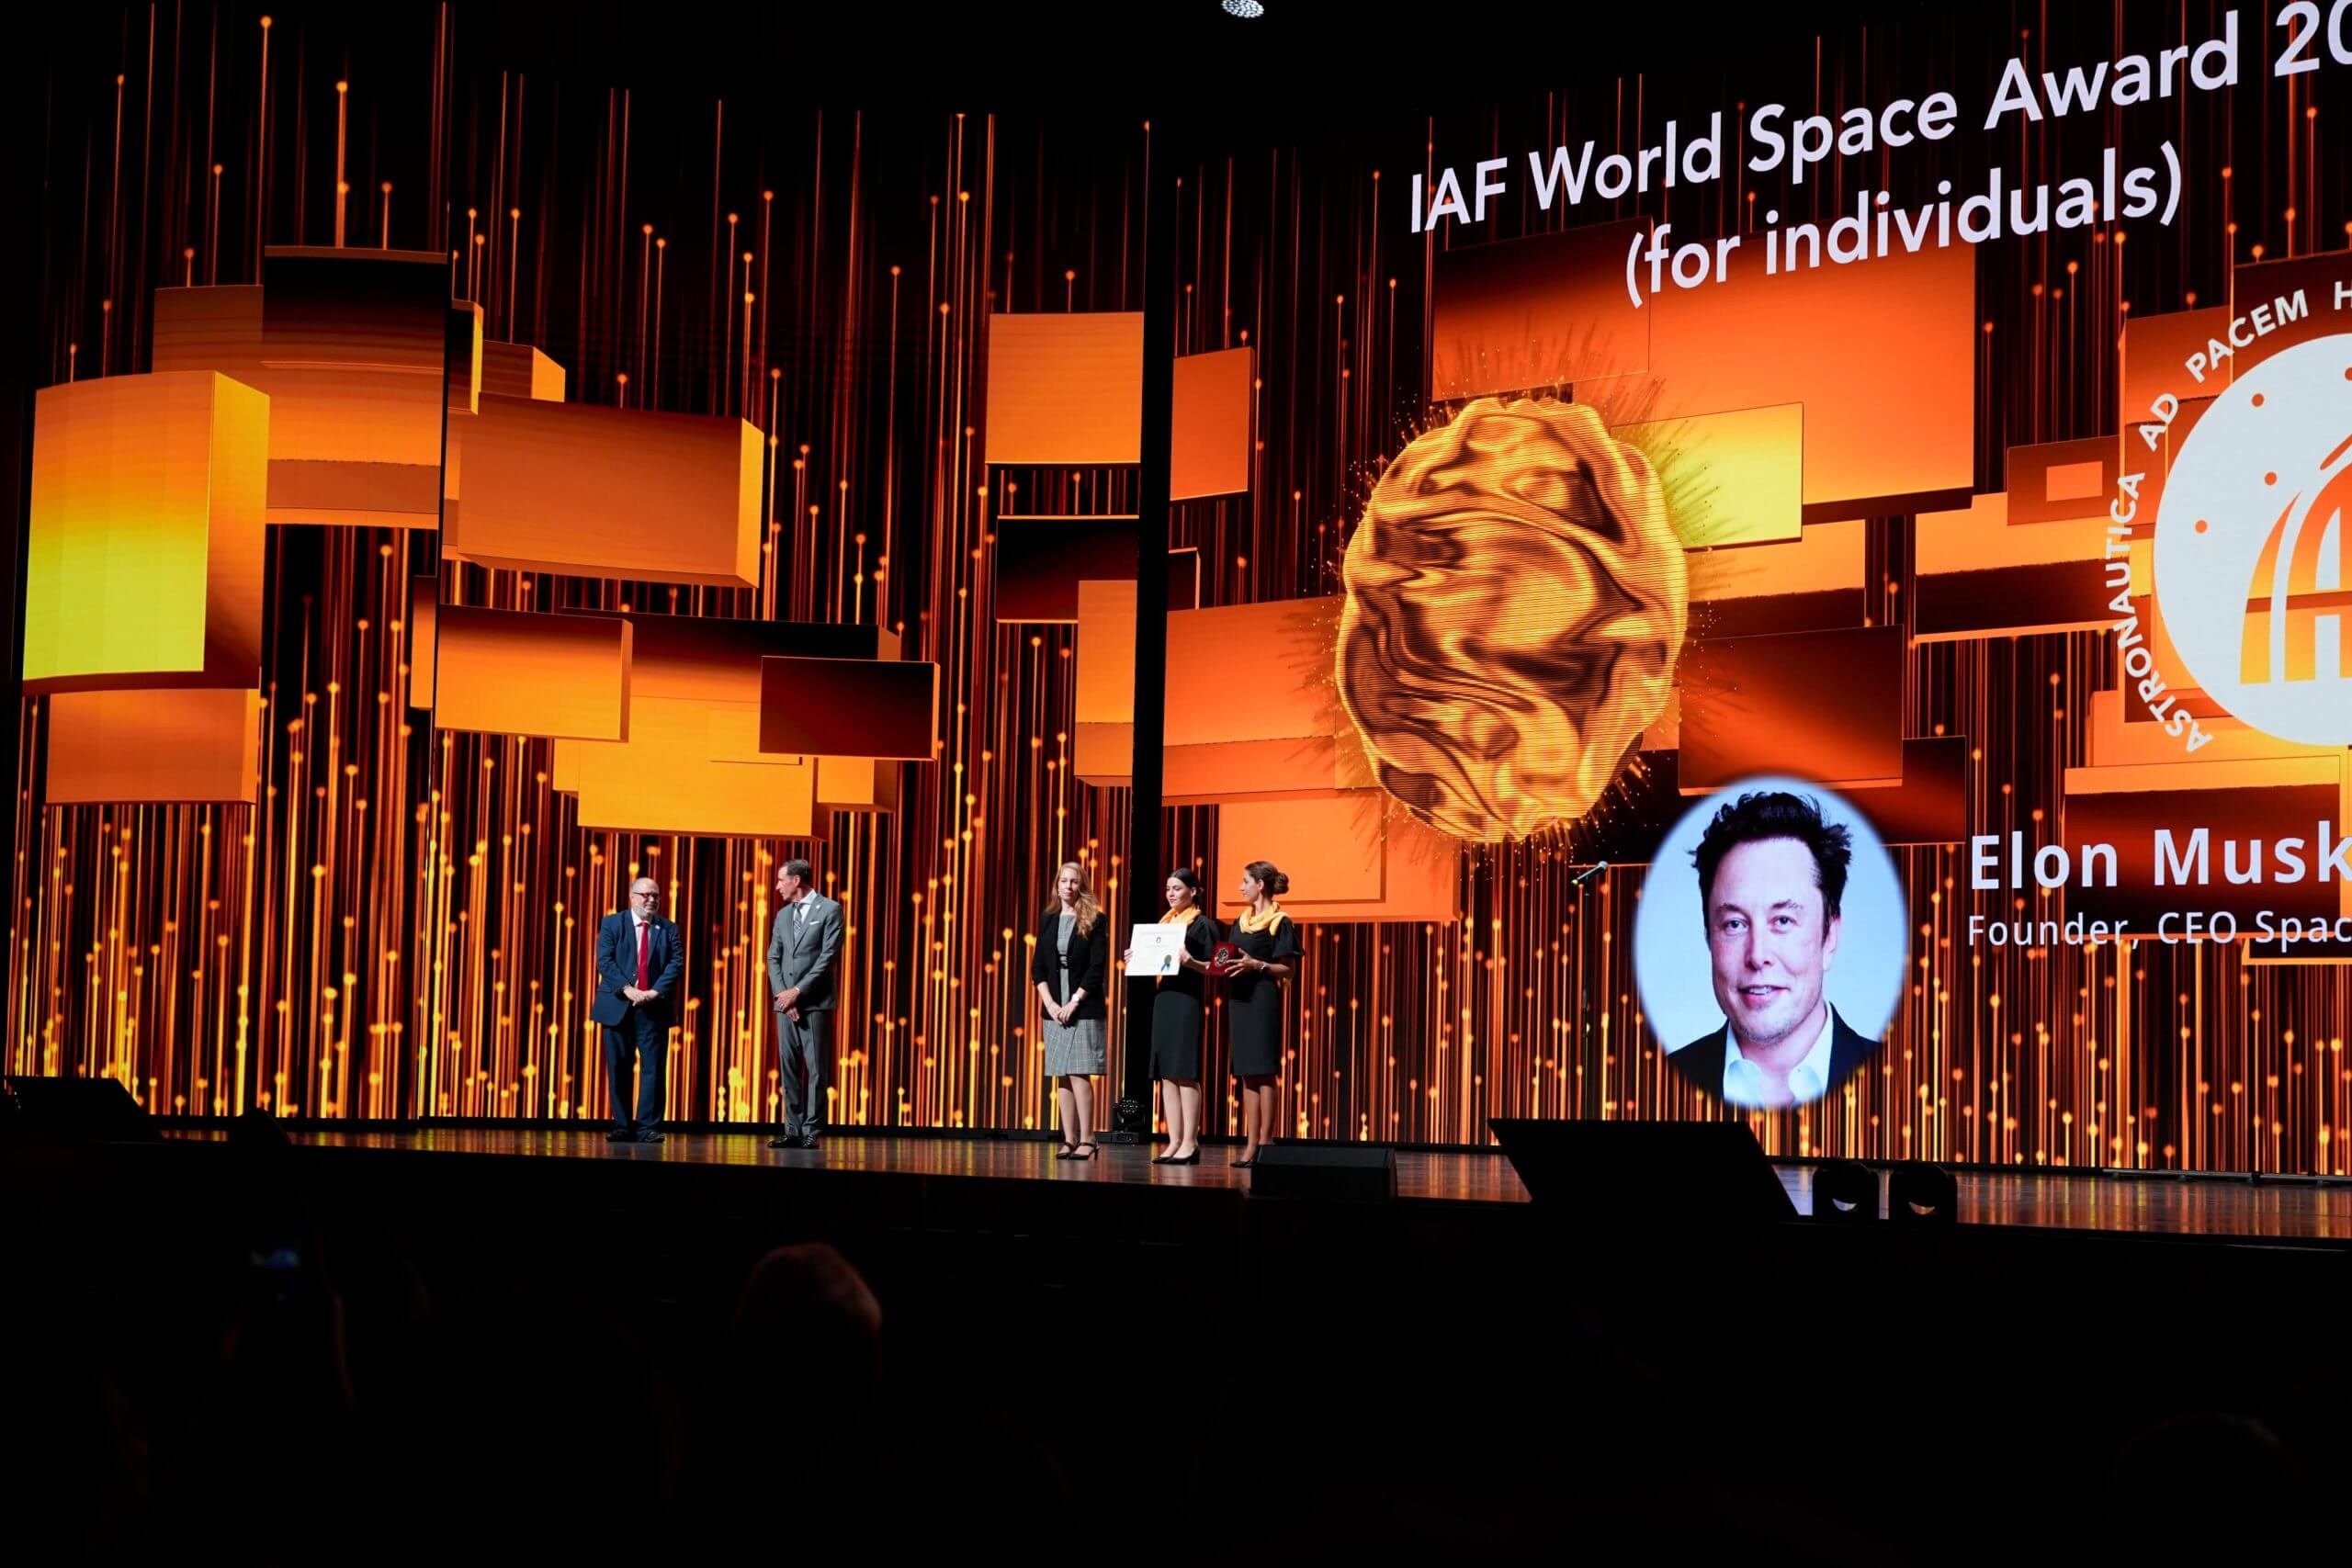 Elon Musk di SpaceX vince l’IAF World Space Award al 74esimo Congresso Astronautico Internazionale